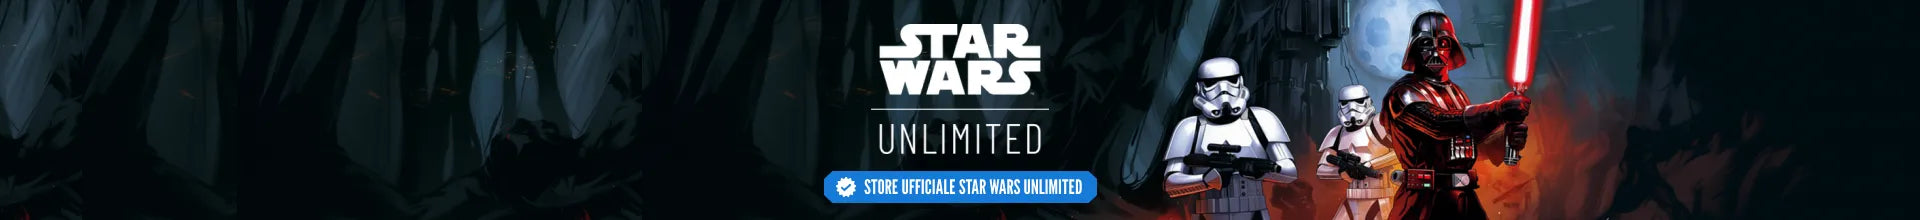 Star Wars Unlimited TCG | Otakura.com